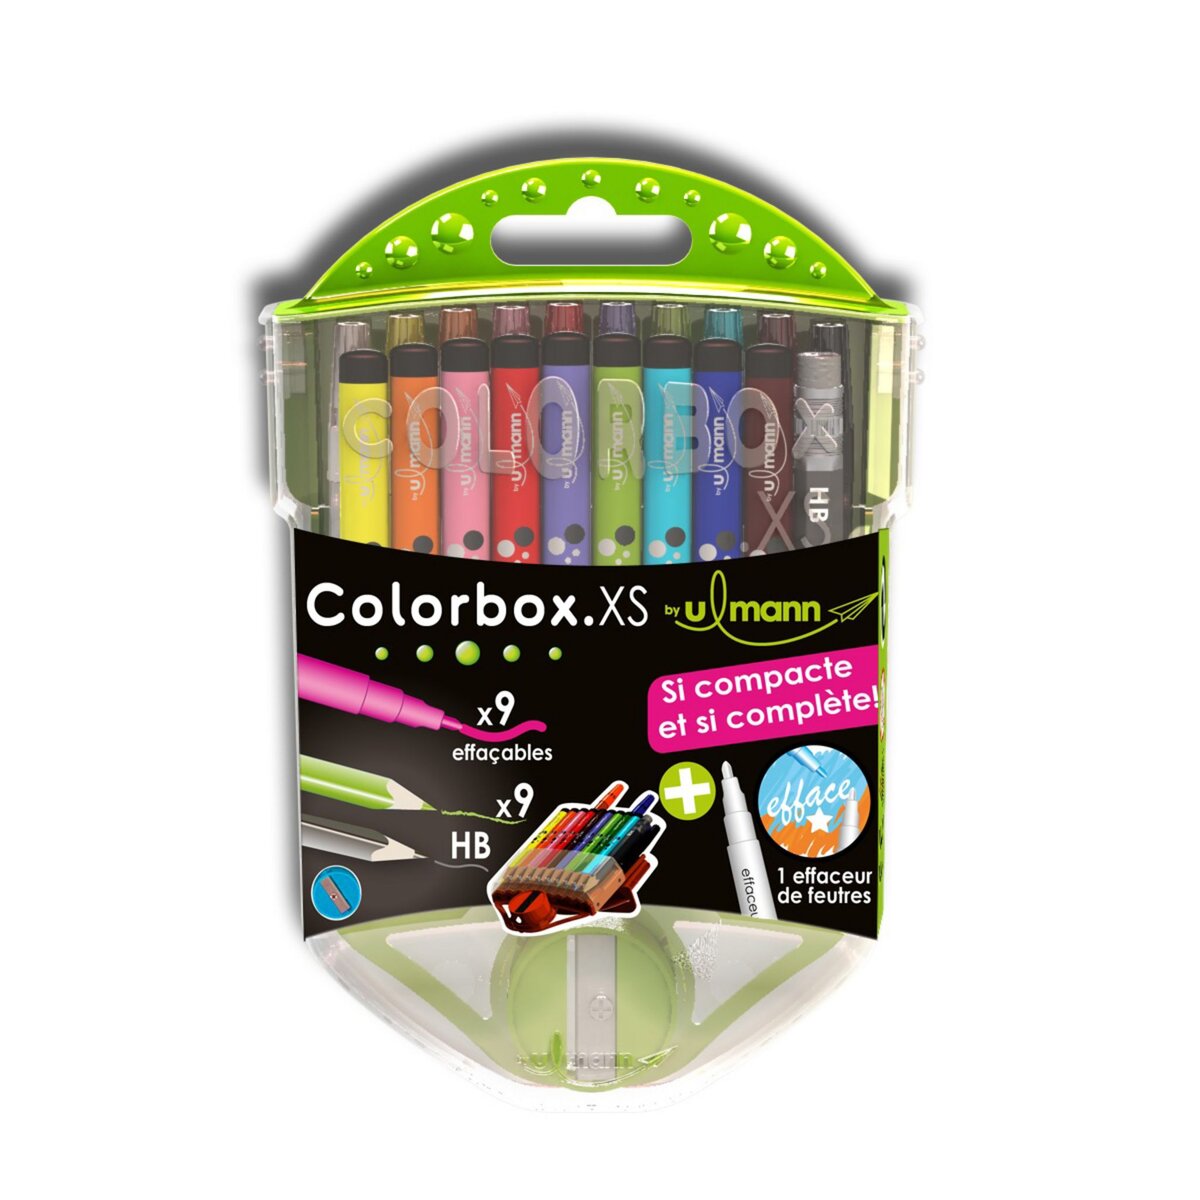 ULMANN  Coffret de coloriage 9 feutres lavables + 9 crayons de couleurs + 1 crayon graphite HB + 1 effaceur de feutres + 1 taille crayon Colorbox XS vert